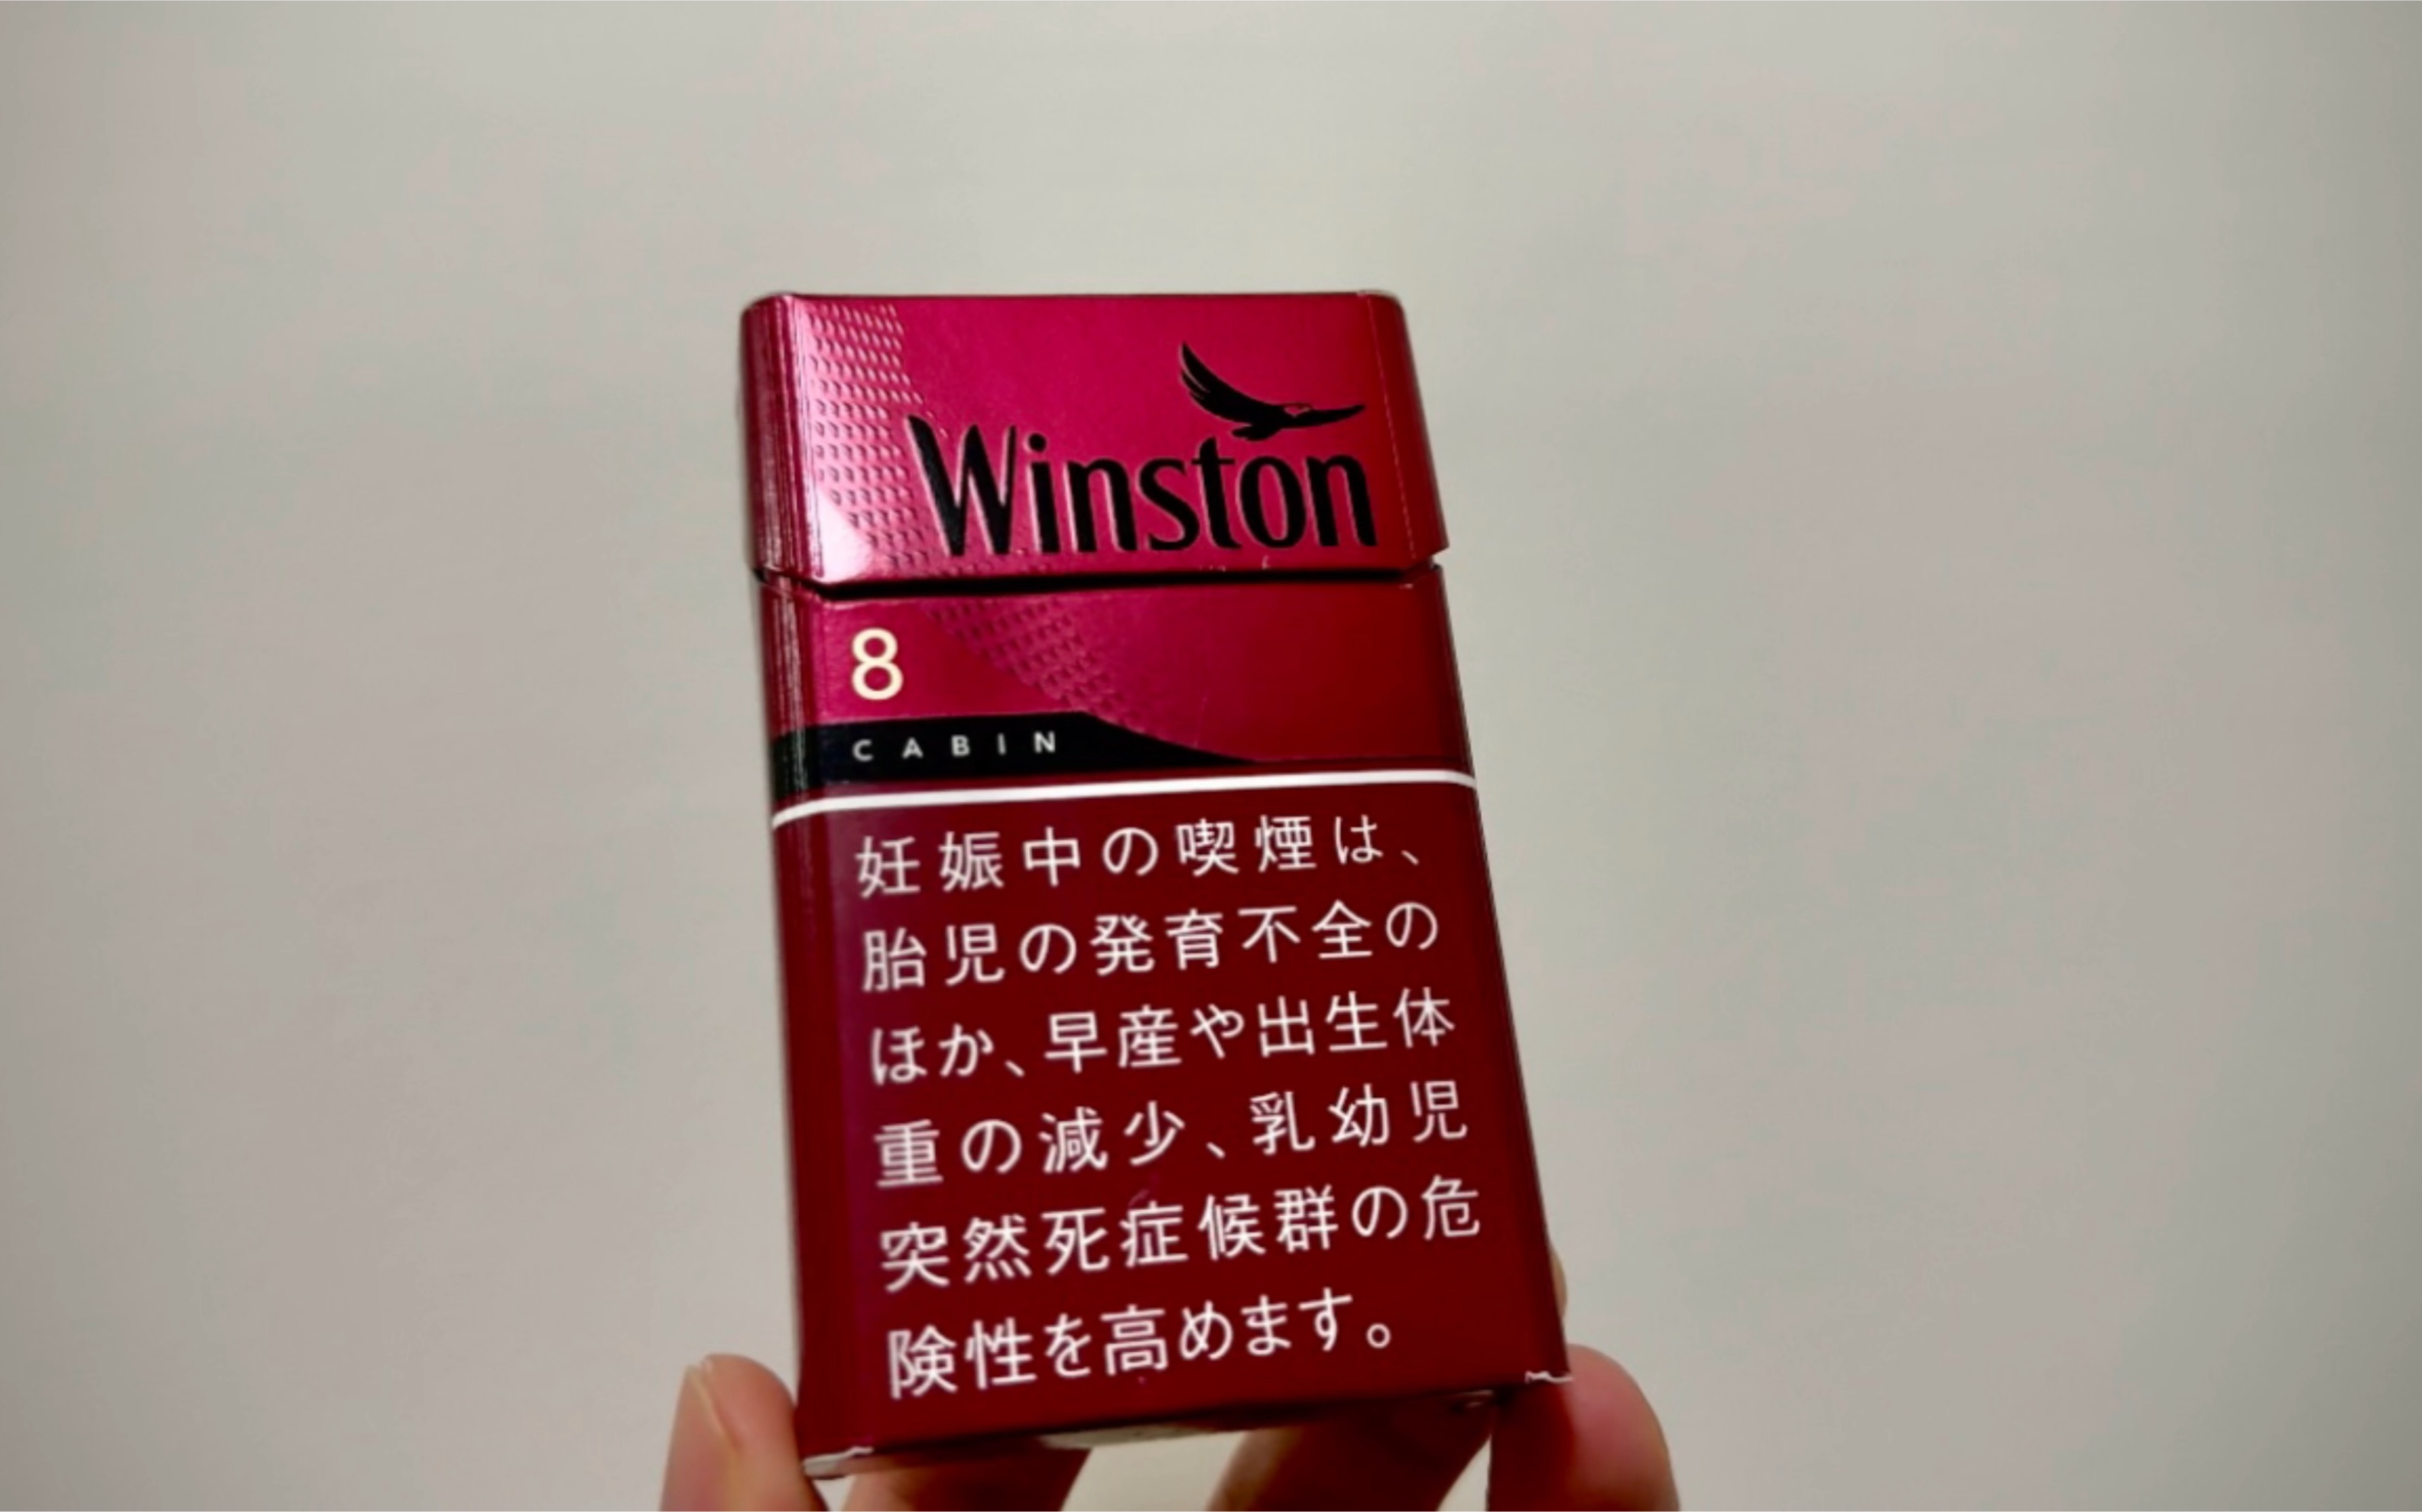 日本烟winston白色图片